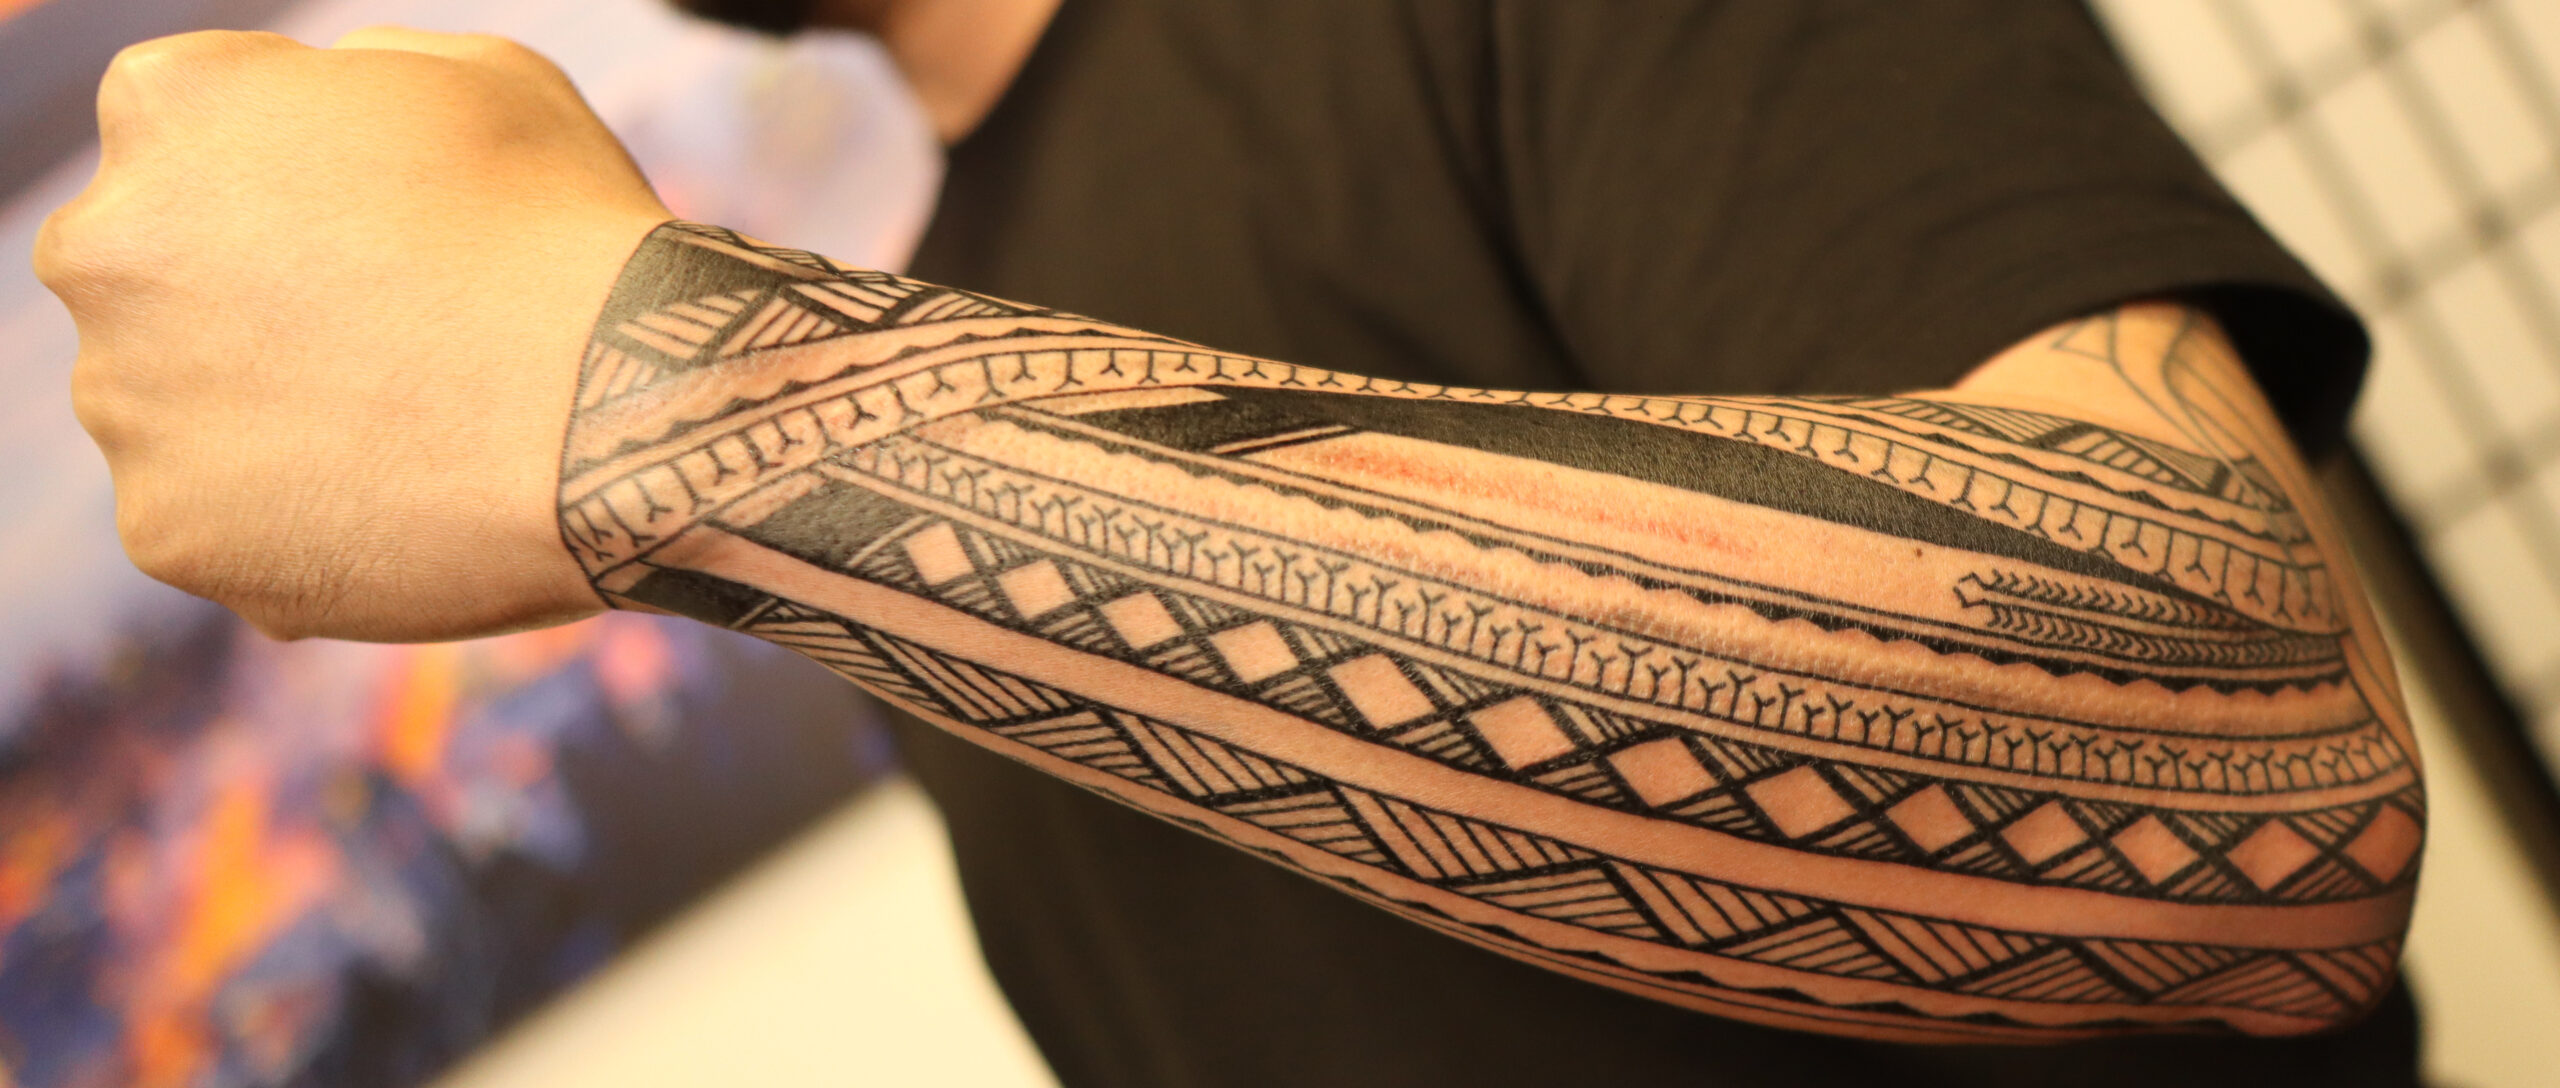 Portland Tattoo Studio, tattoos, full sleeve, tribal, filipino